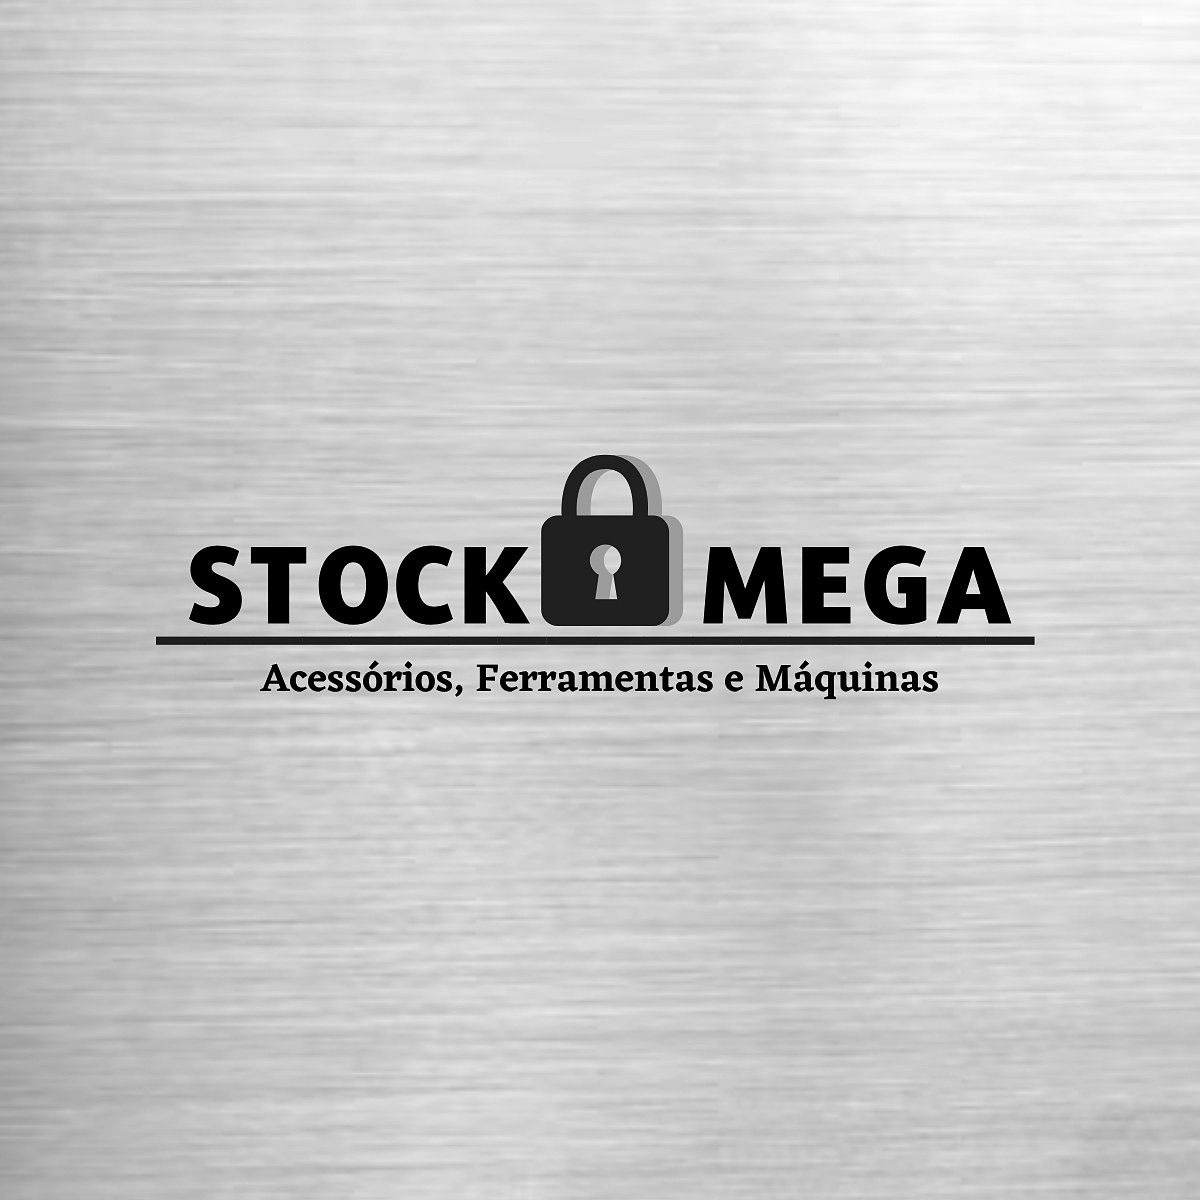 eShop Mega Stock - Compre online com frete grátis para todo o Brasil.